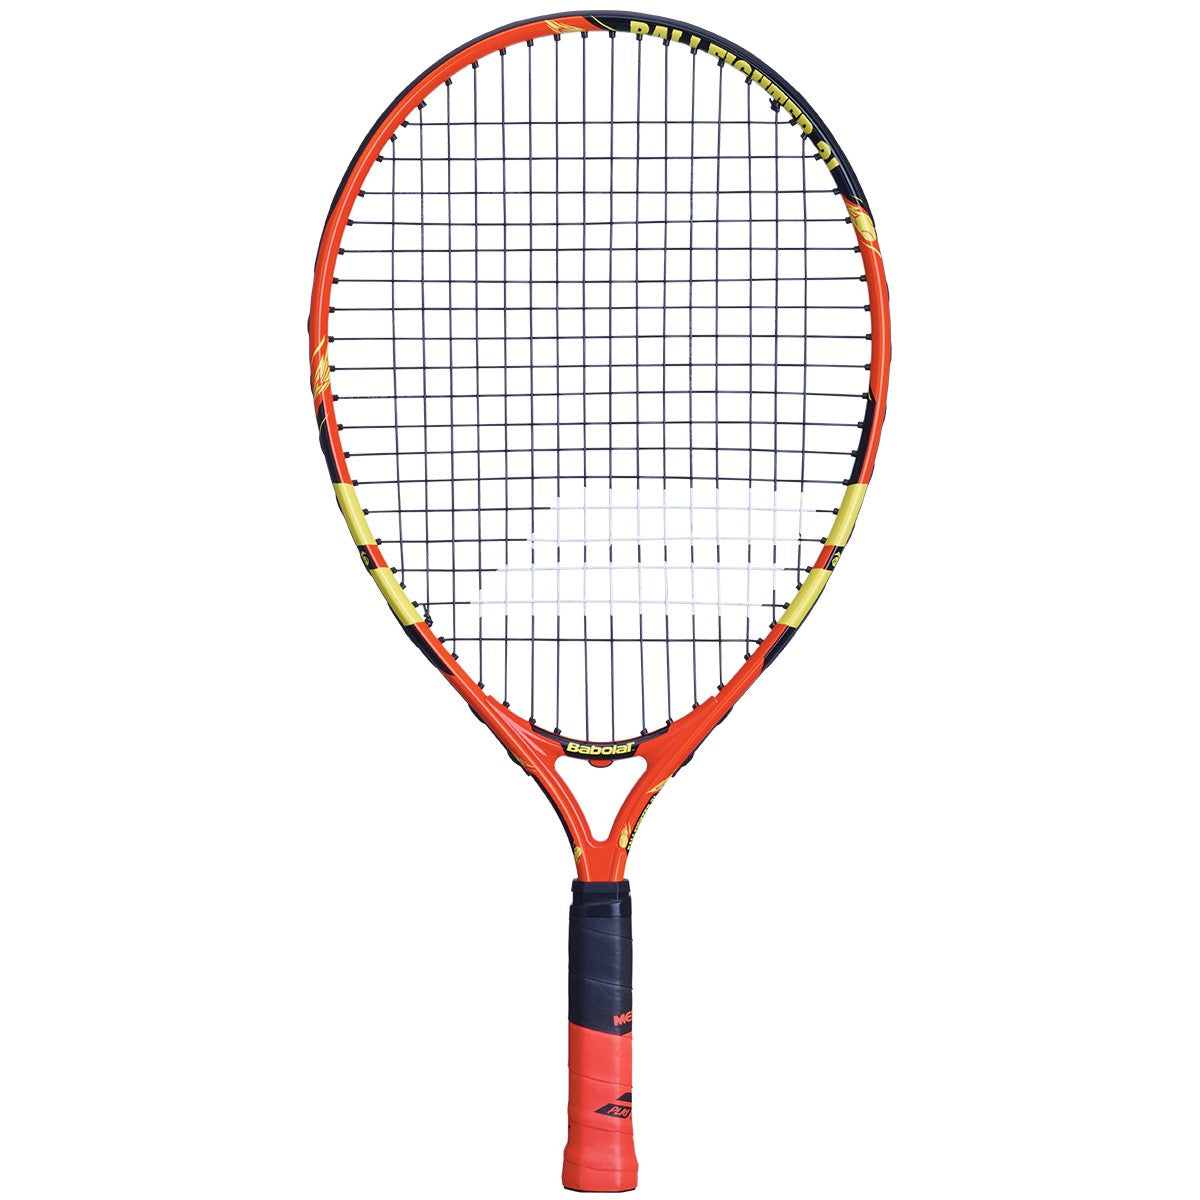 Babolat Ballfighter 21 inch Junior Tennis Racket